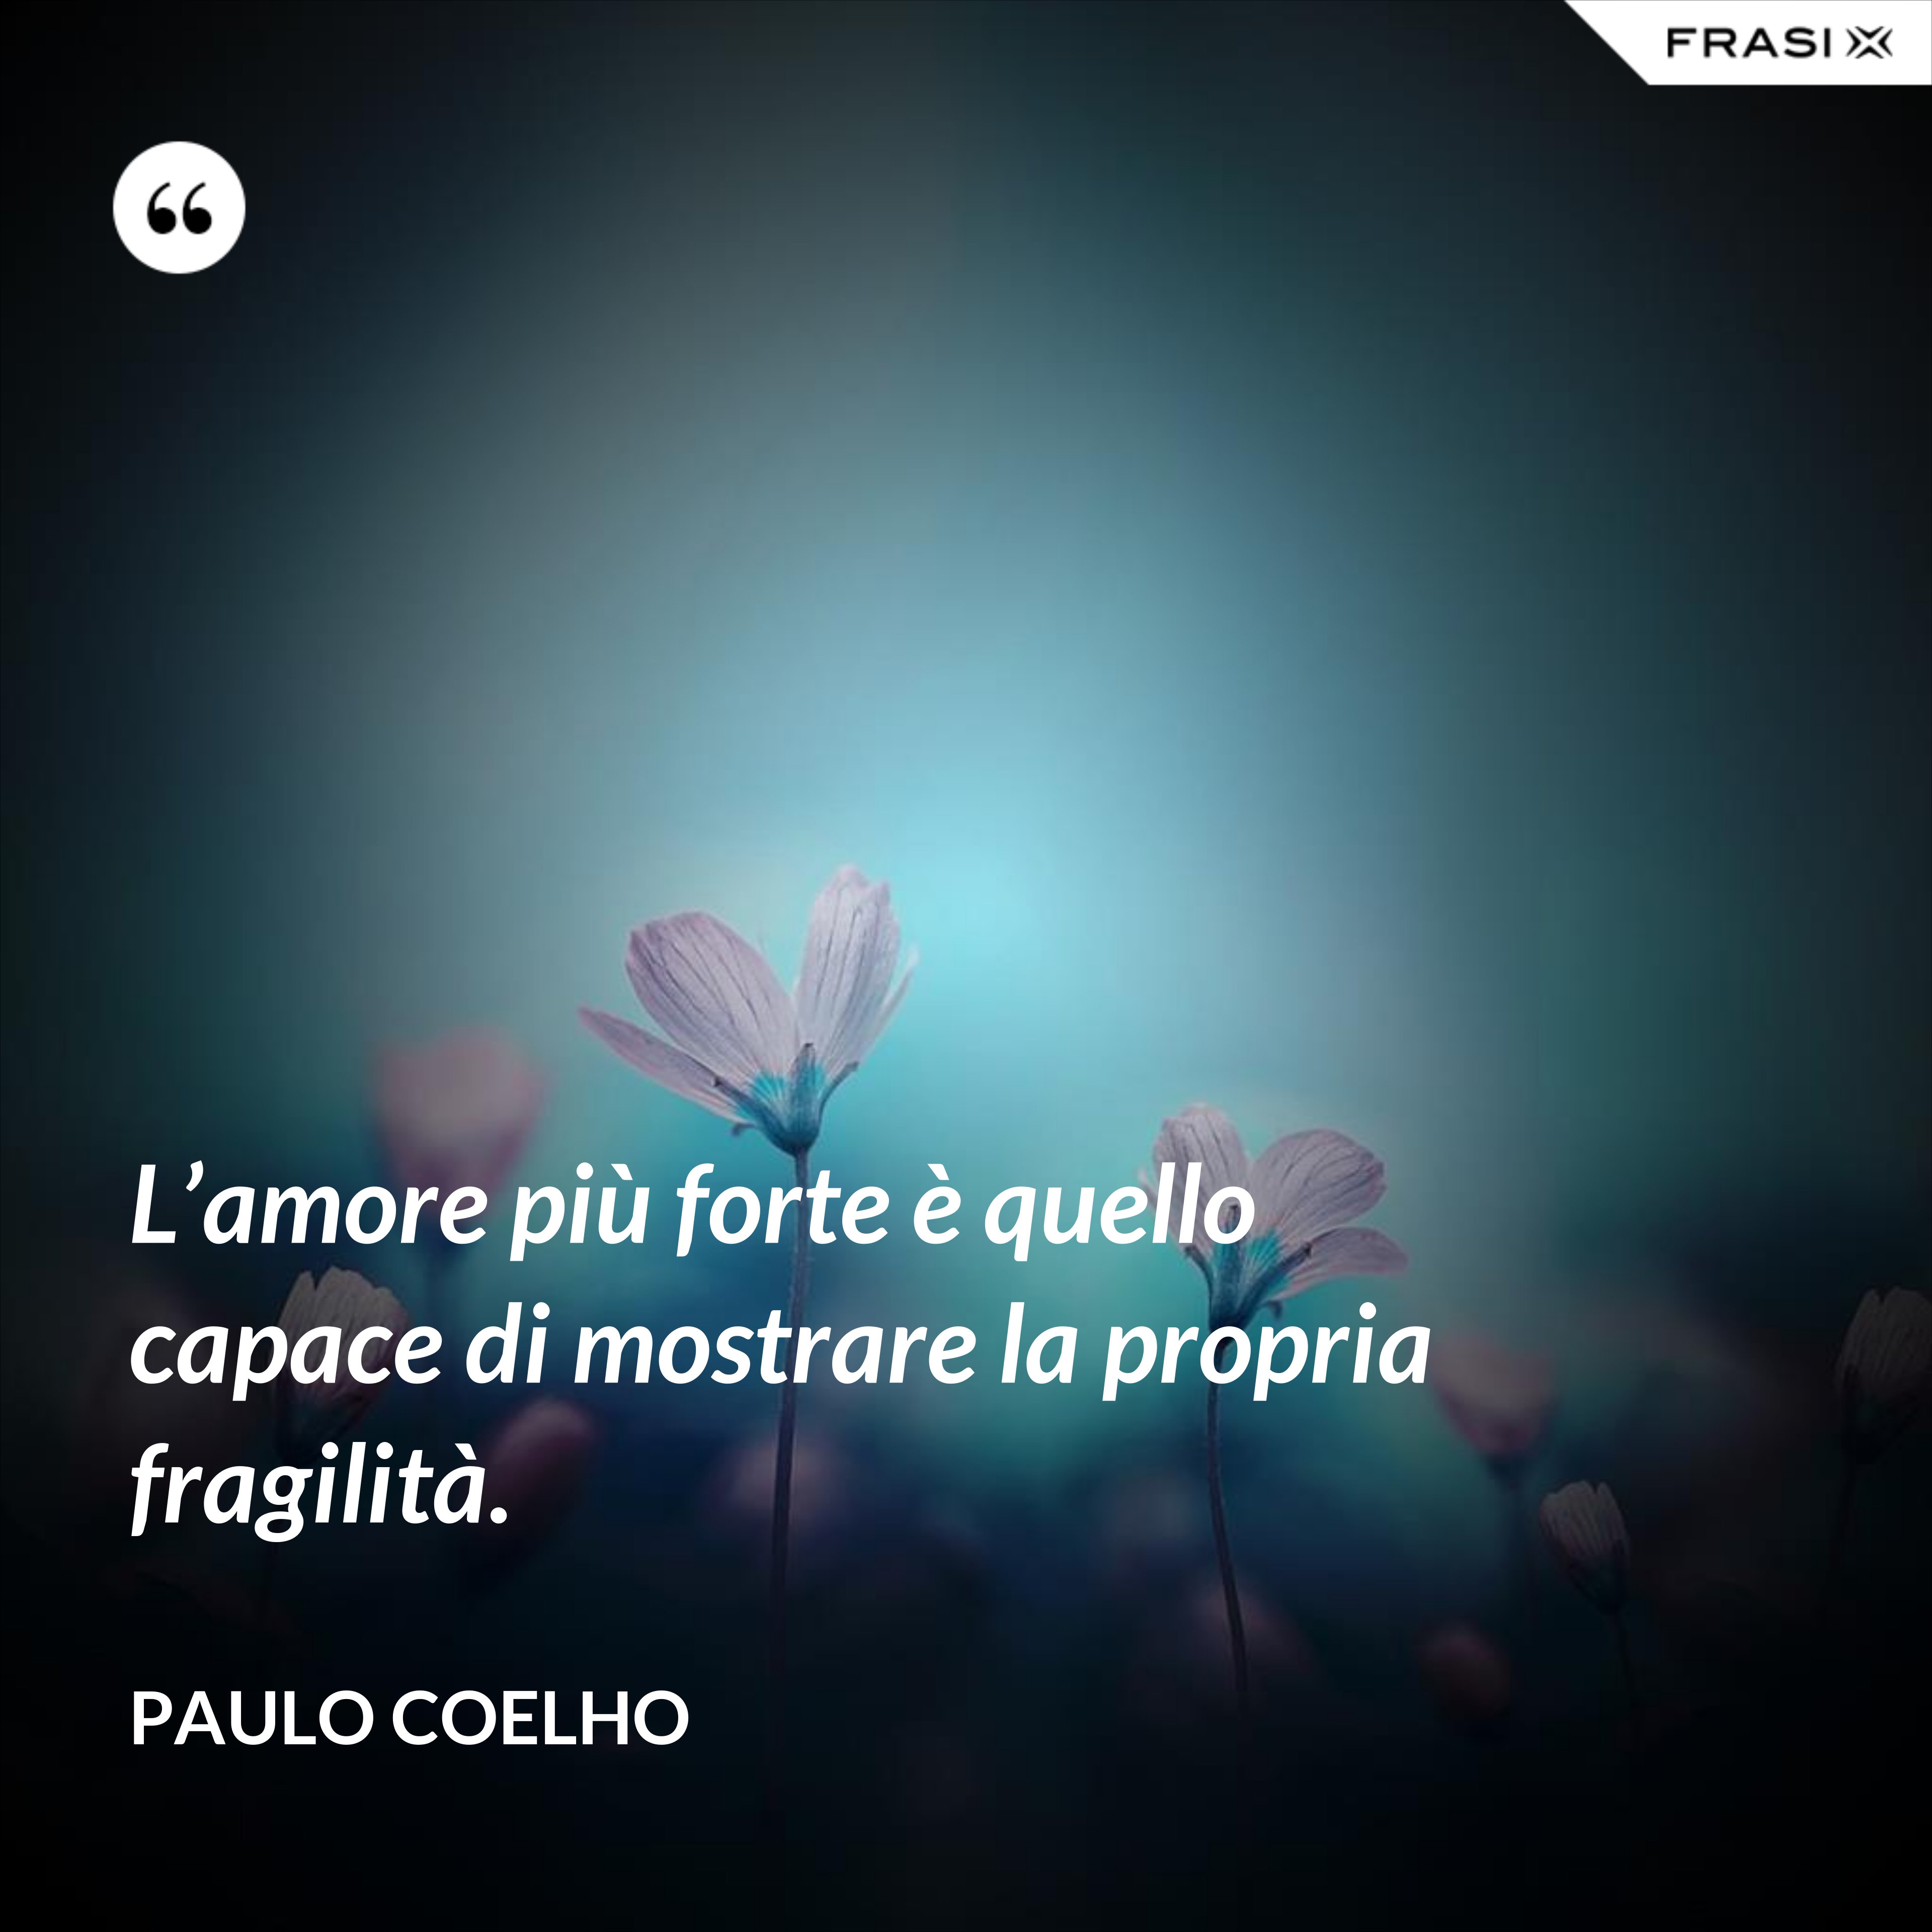 L’amore più forte è quello capace di mostrare la propria fragilità. - Paulo Coelho